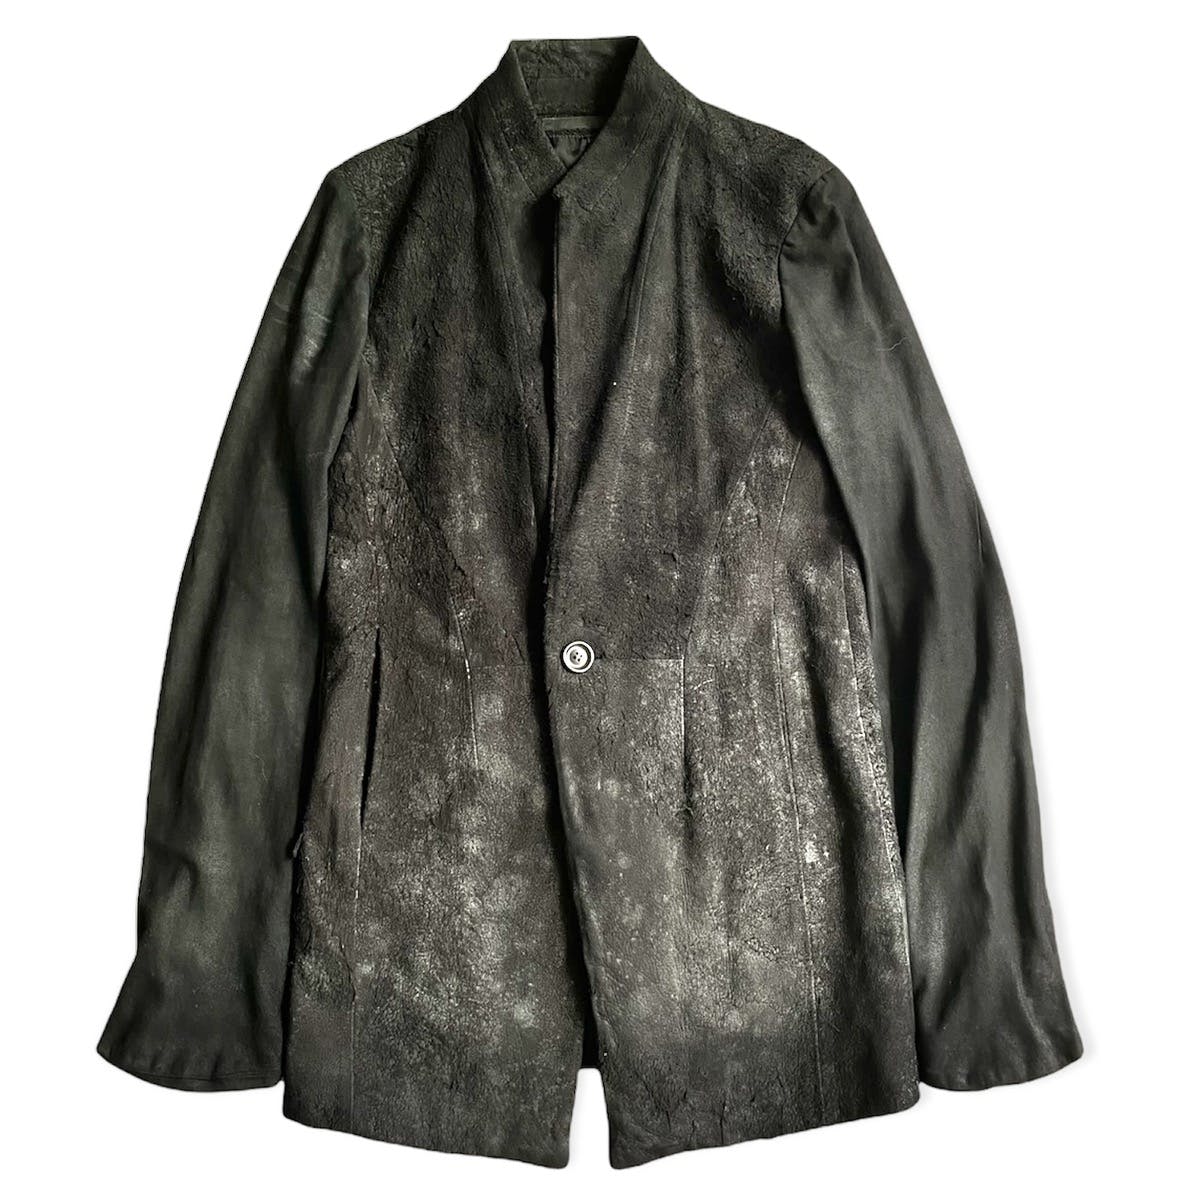 FW13-14 “Crack” Leather Jacket - 1